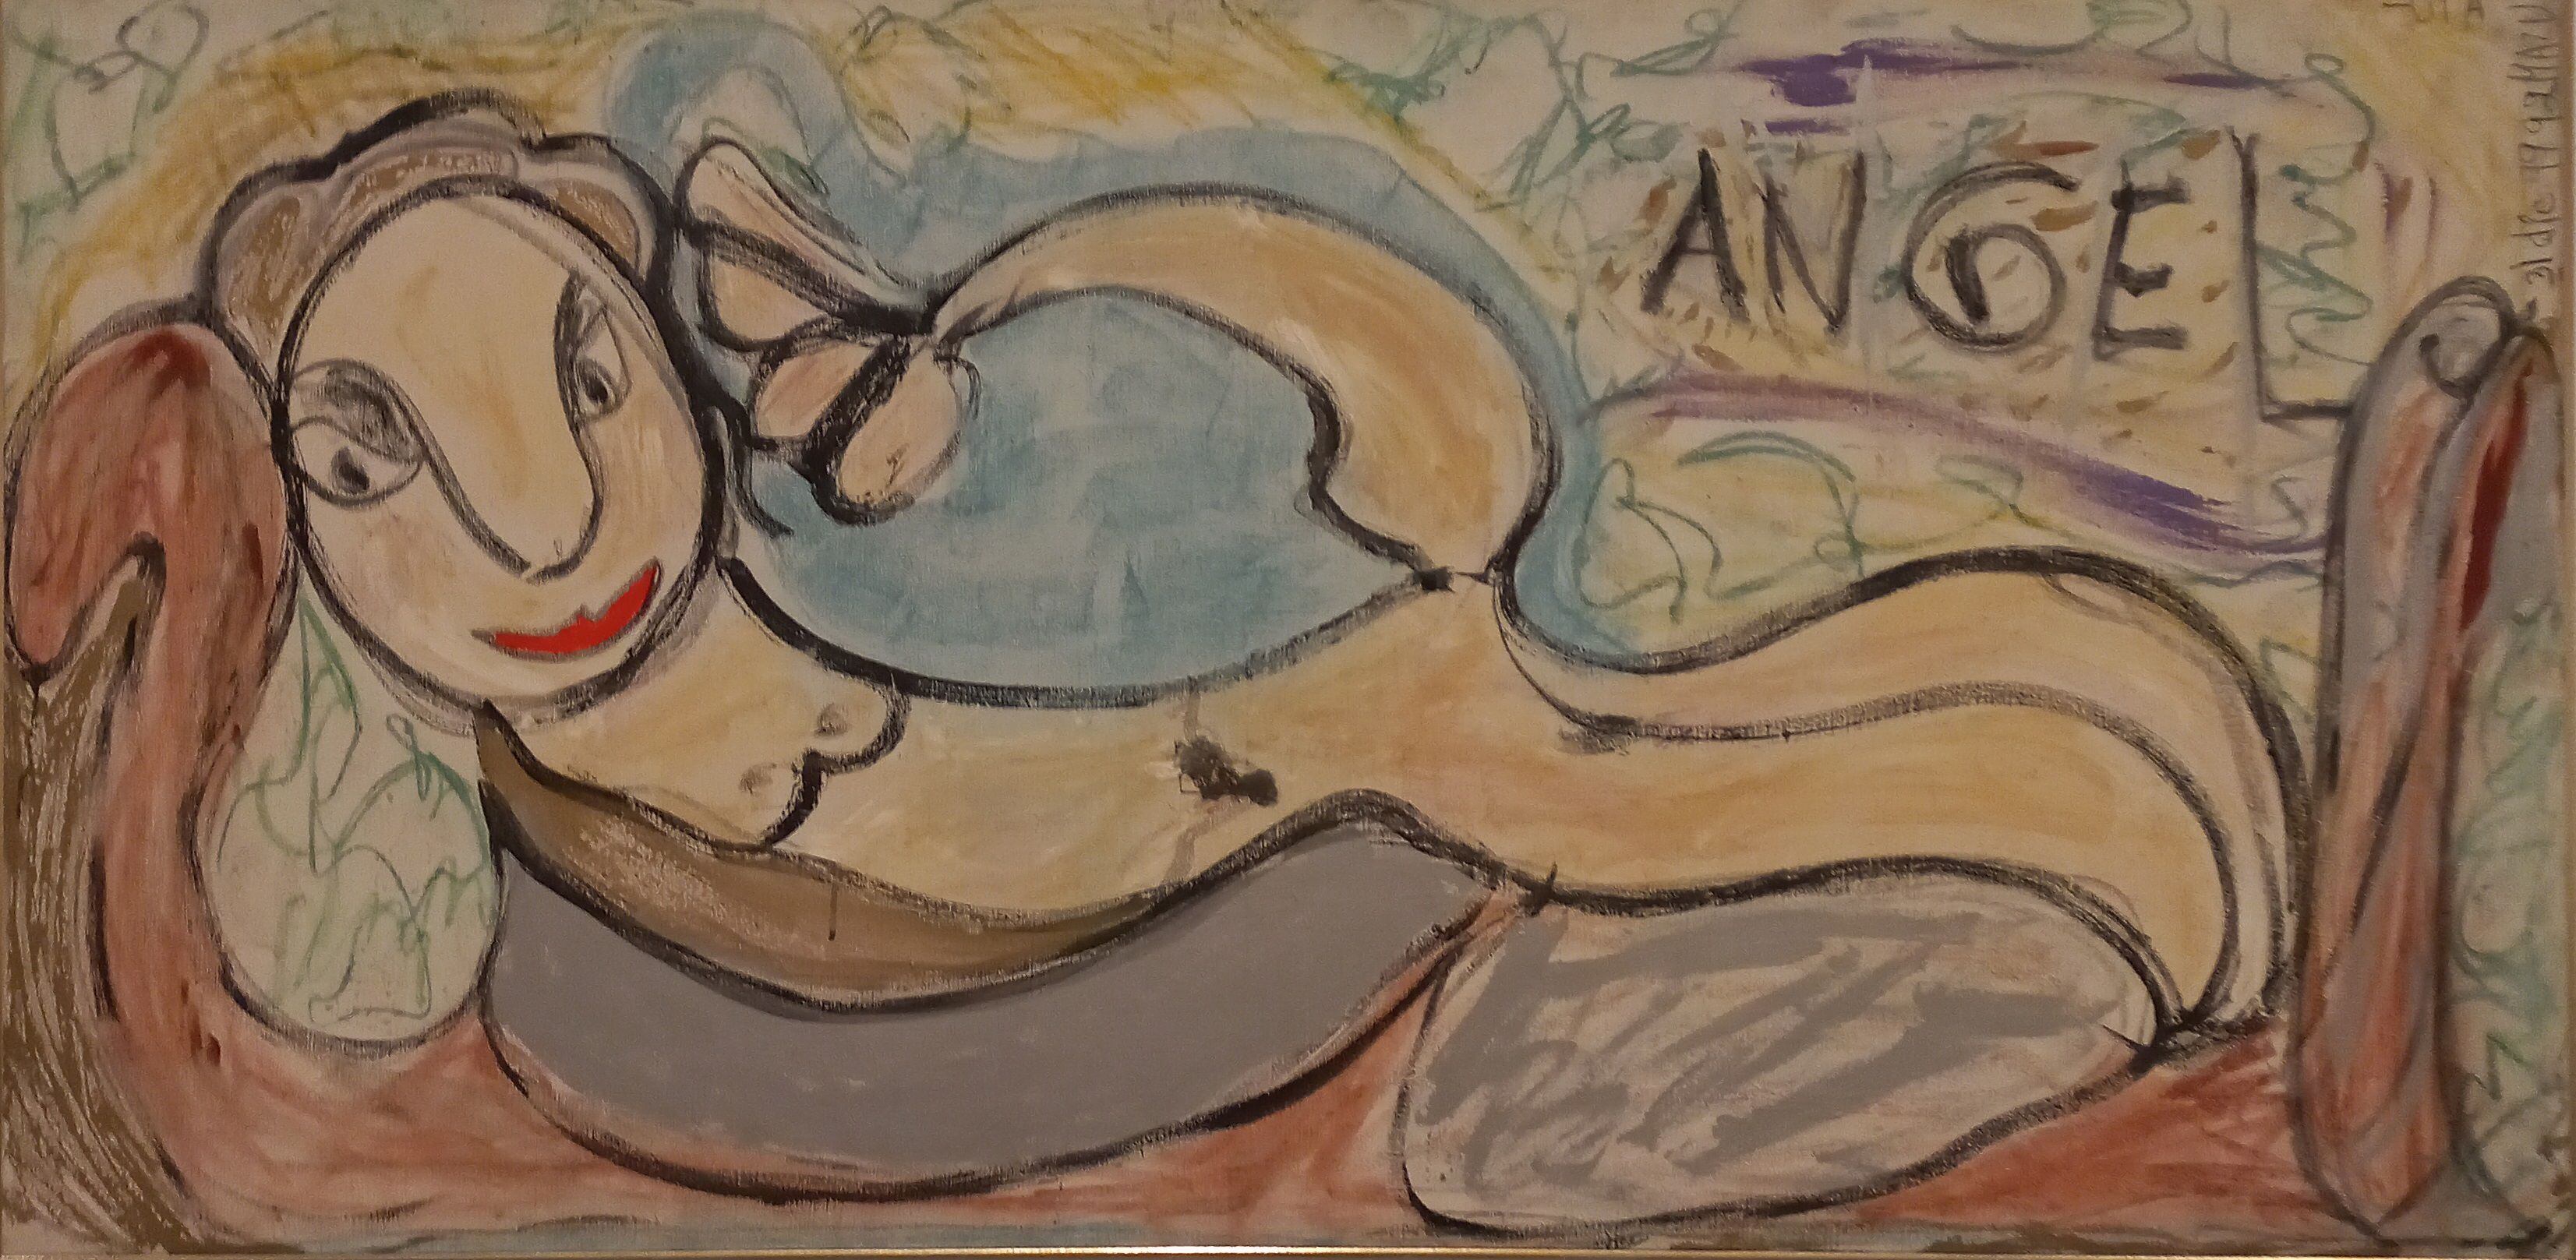 'Ángel', de Margarita Azurdia, 1992. Cortesía de Milagros del Amor, legado de la artista.